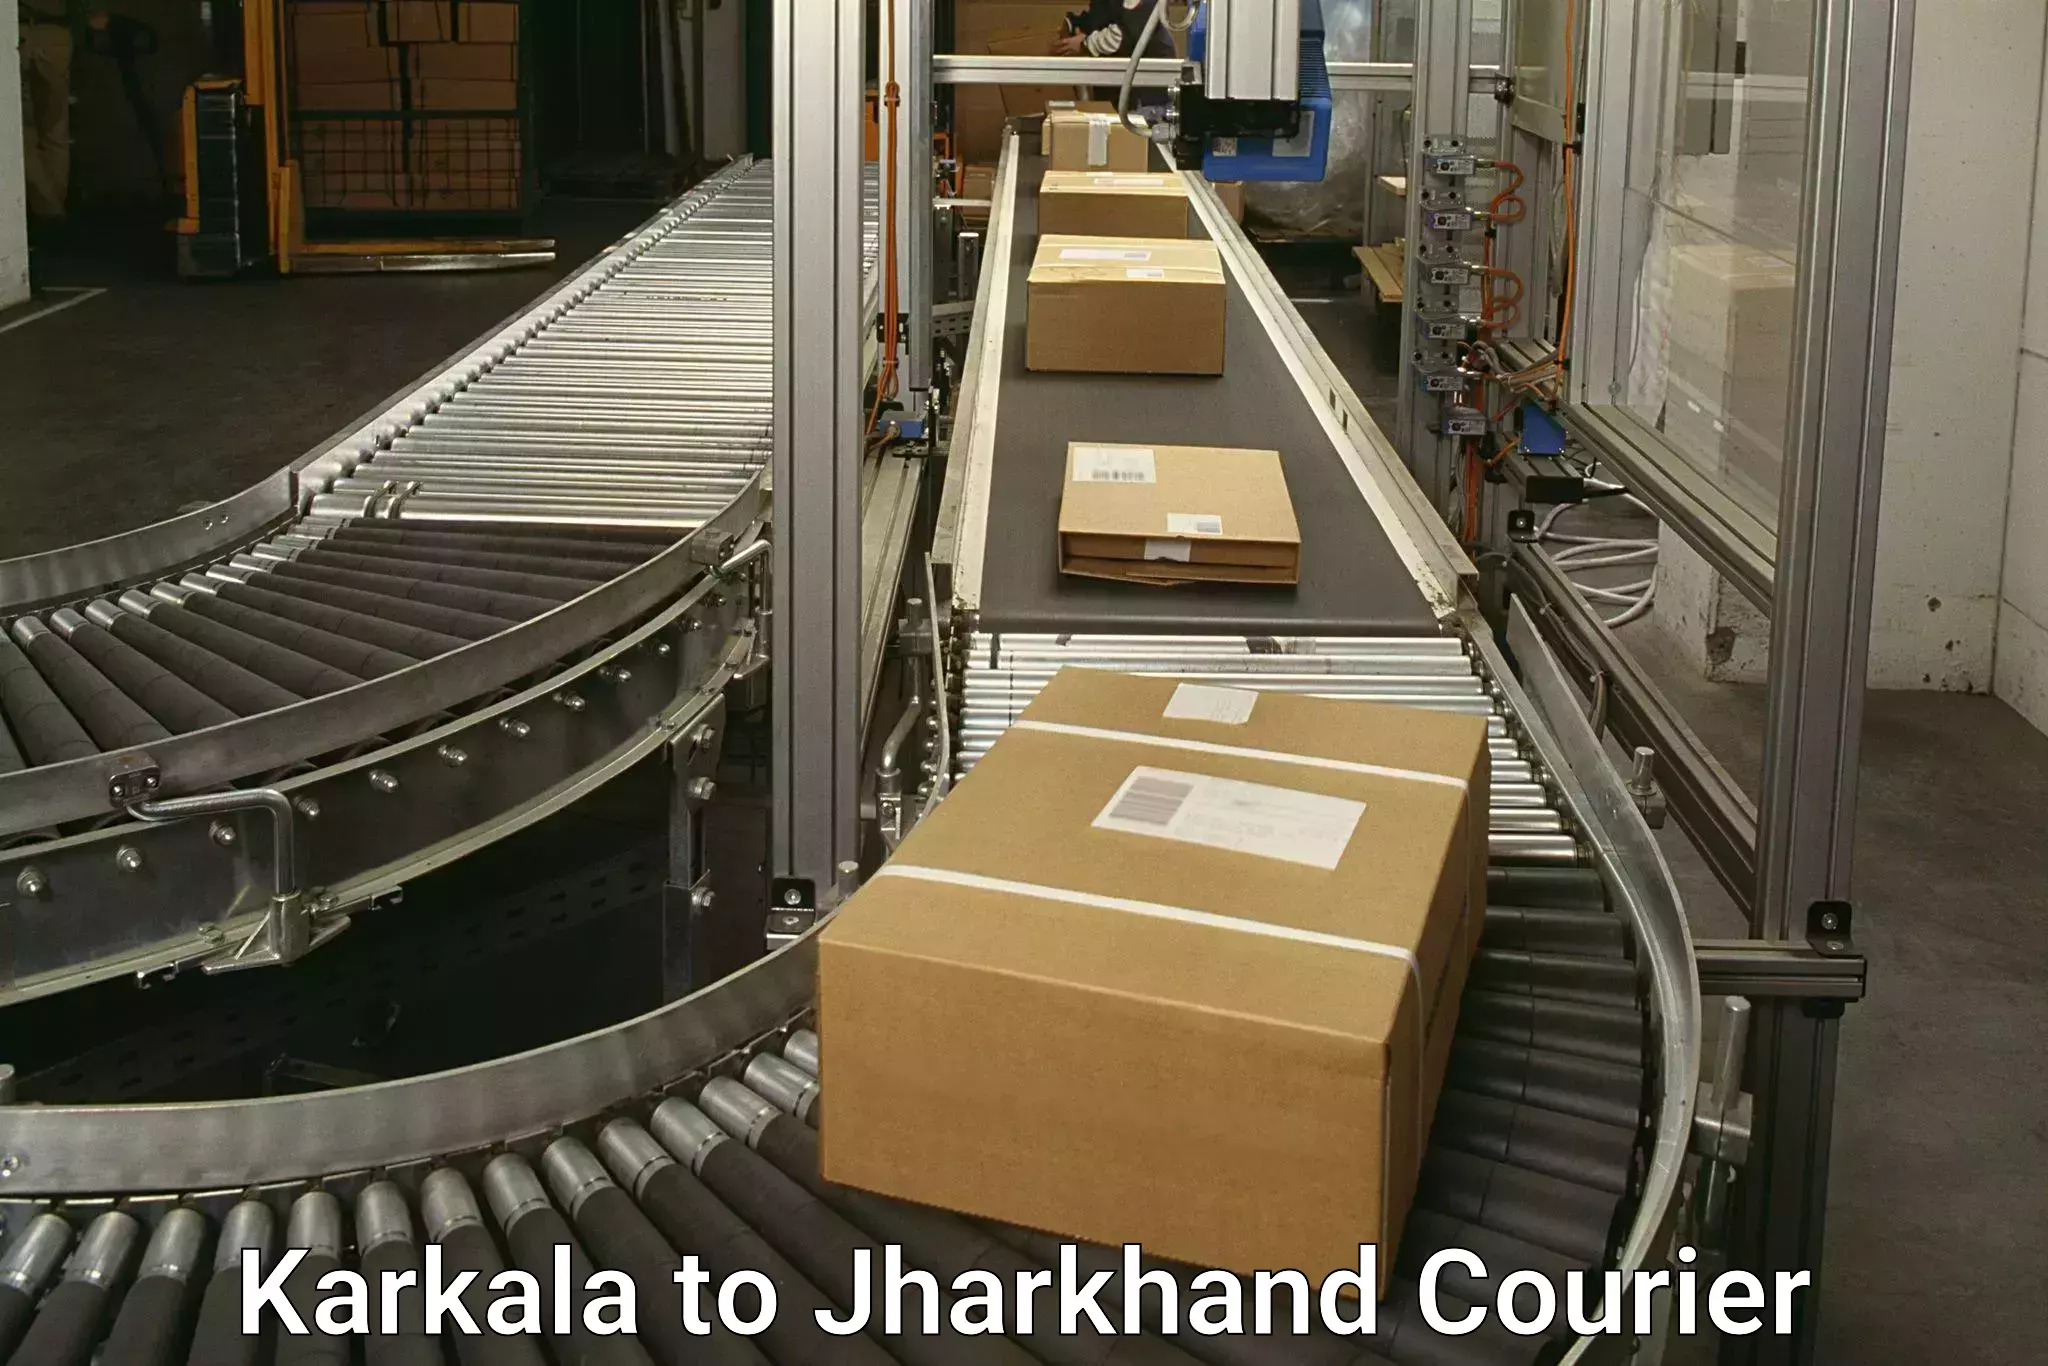 Efficient parcel transport Karkala to Jamshedpur